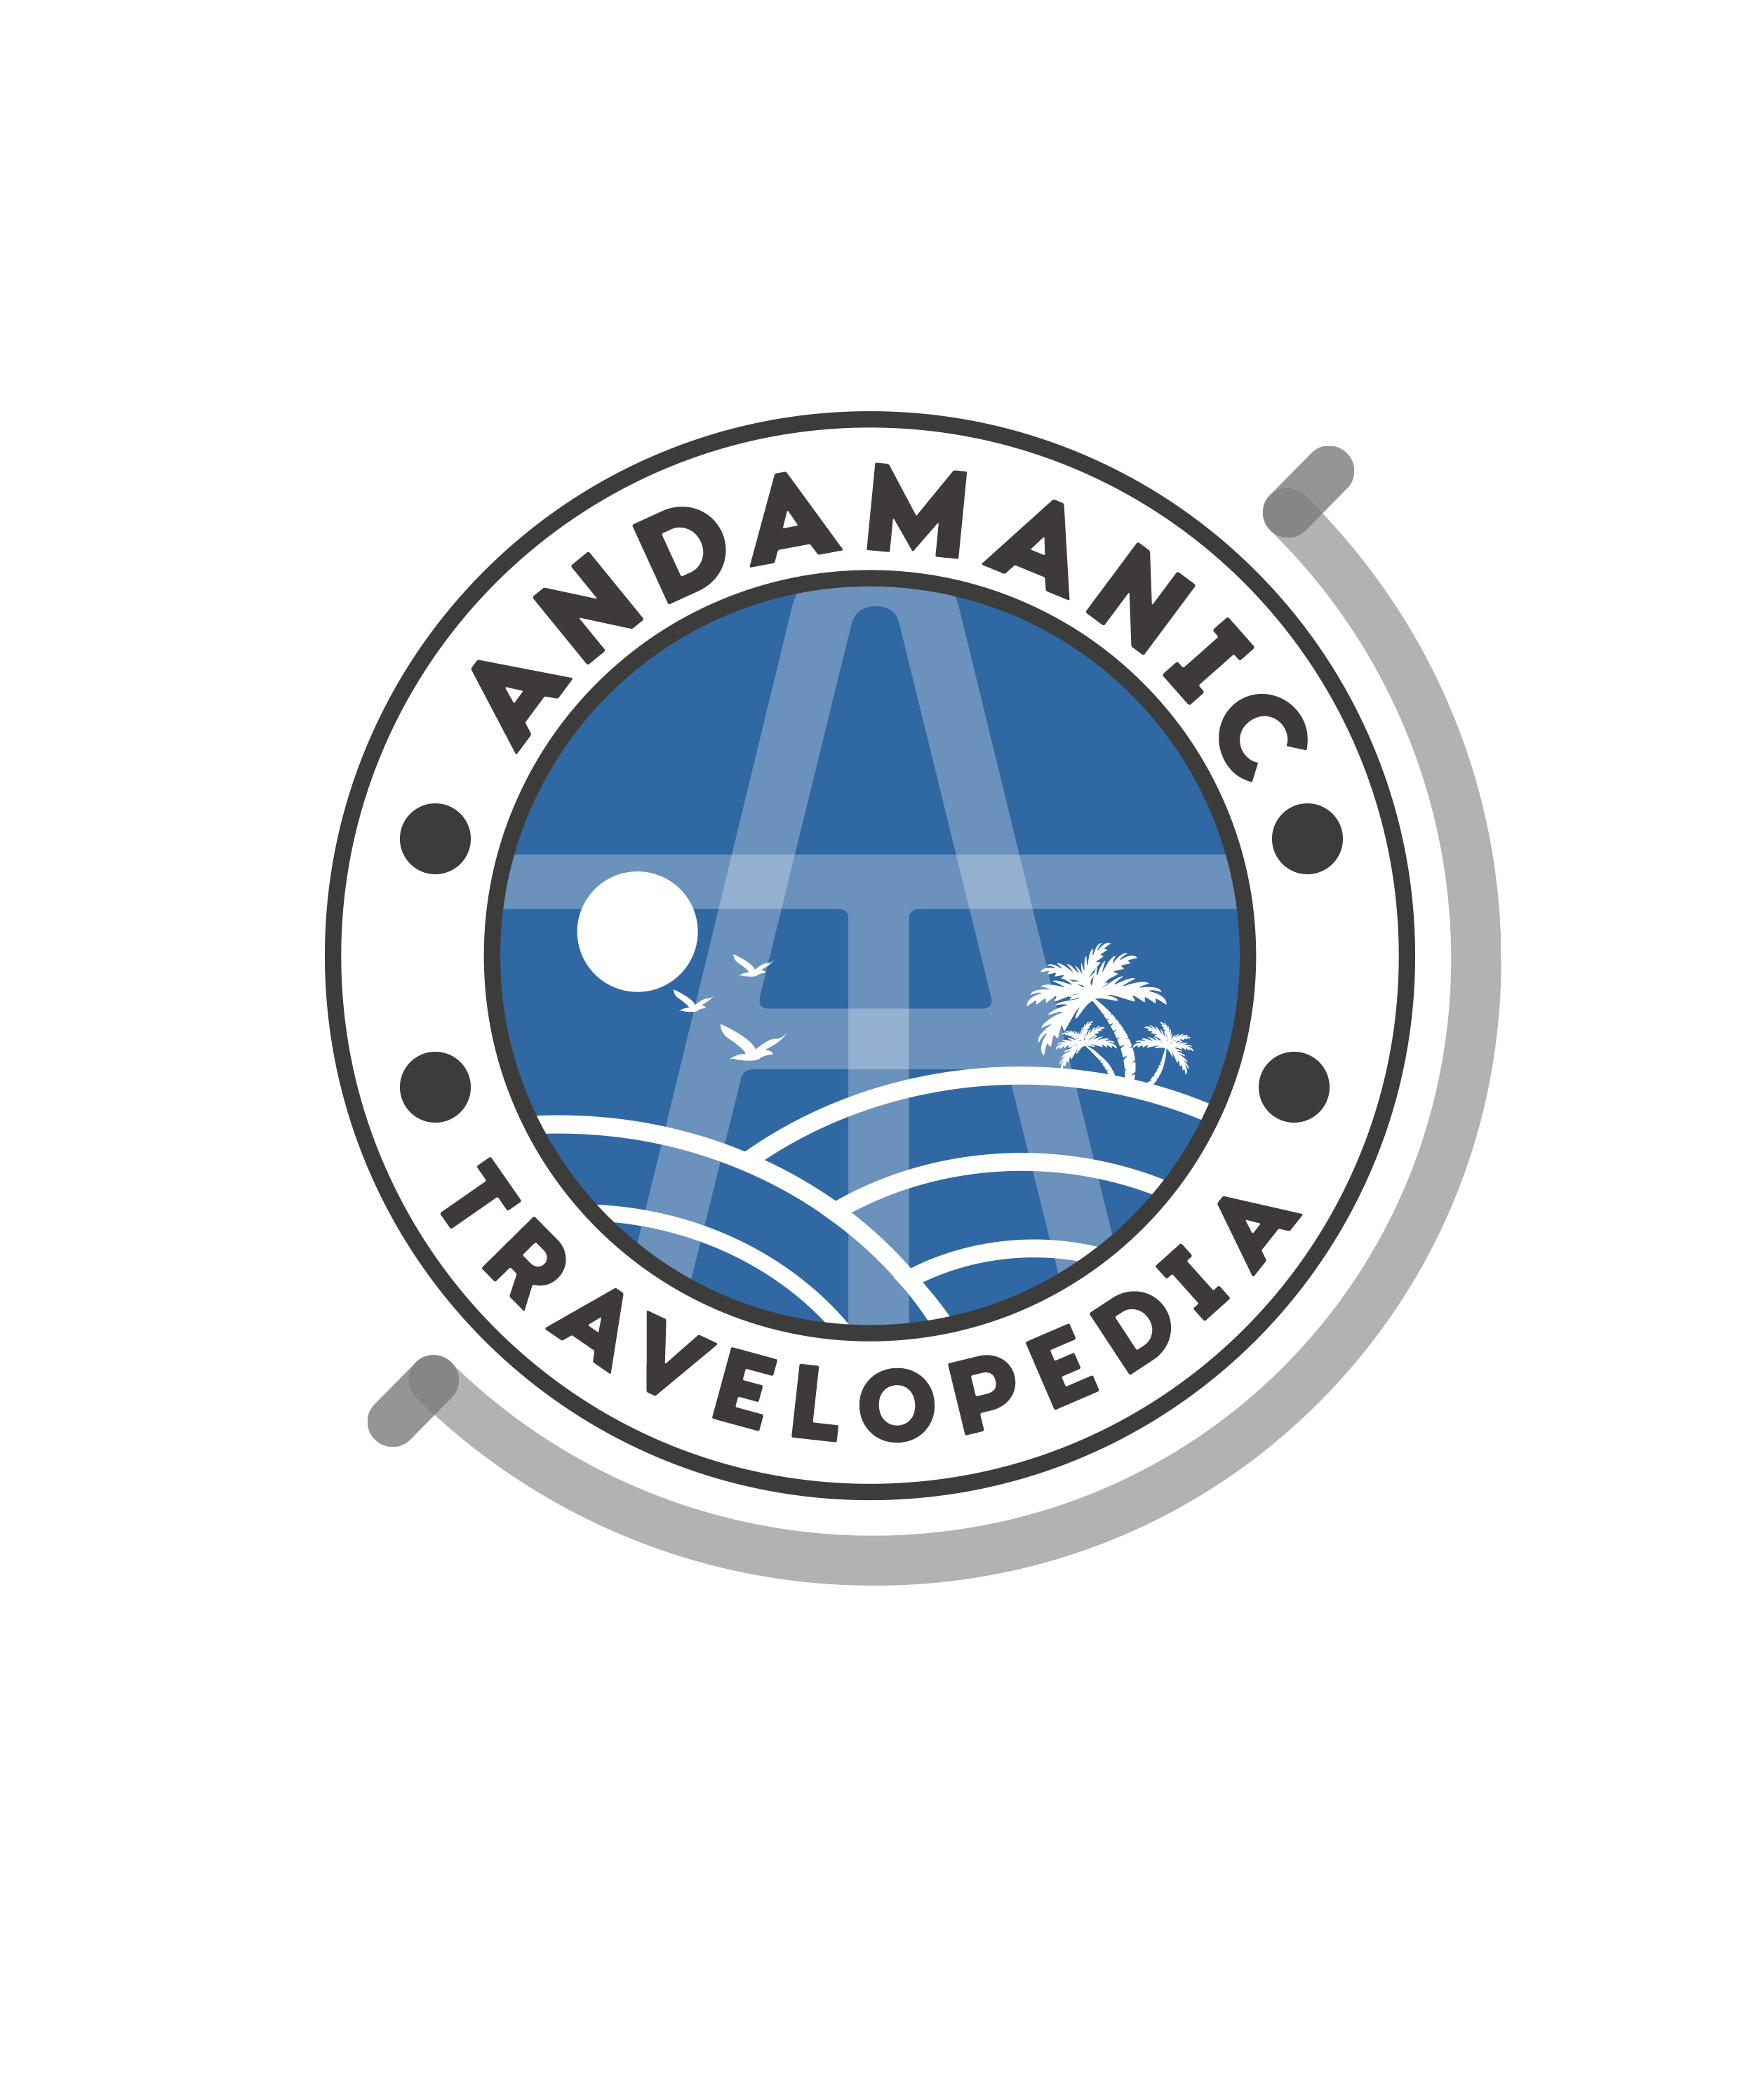 andamanic_travelopedia_logo